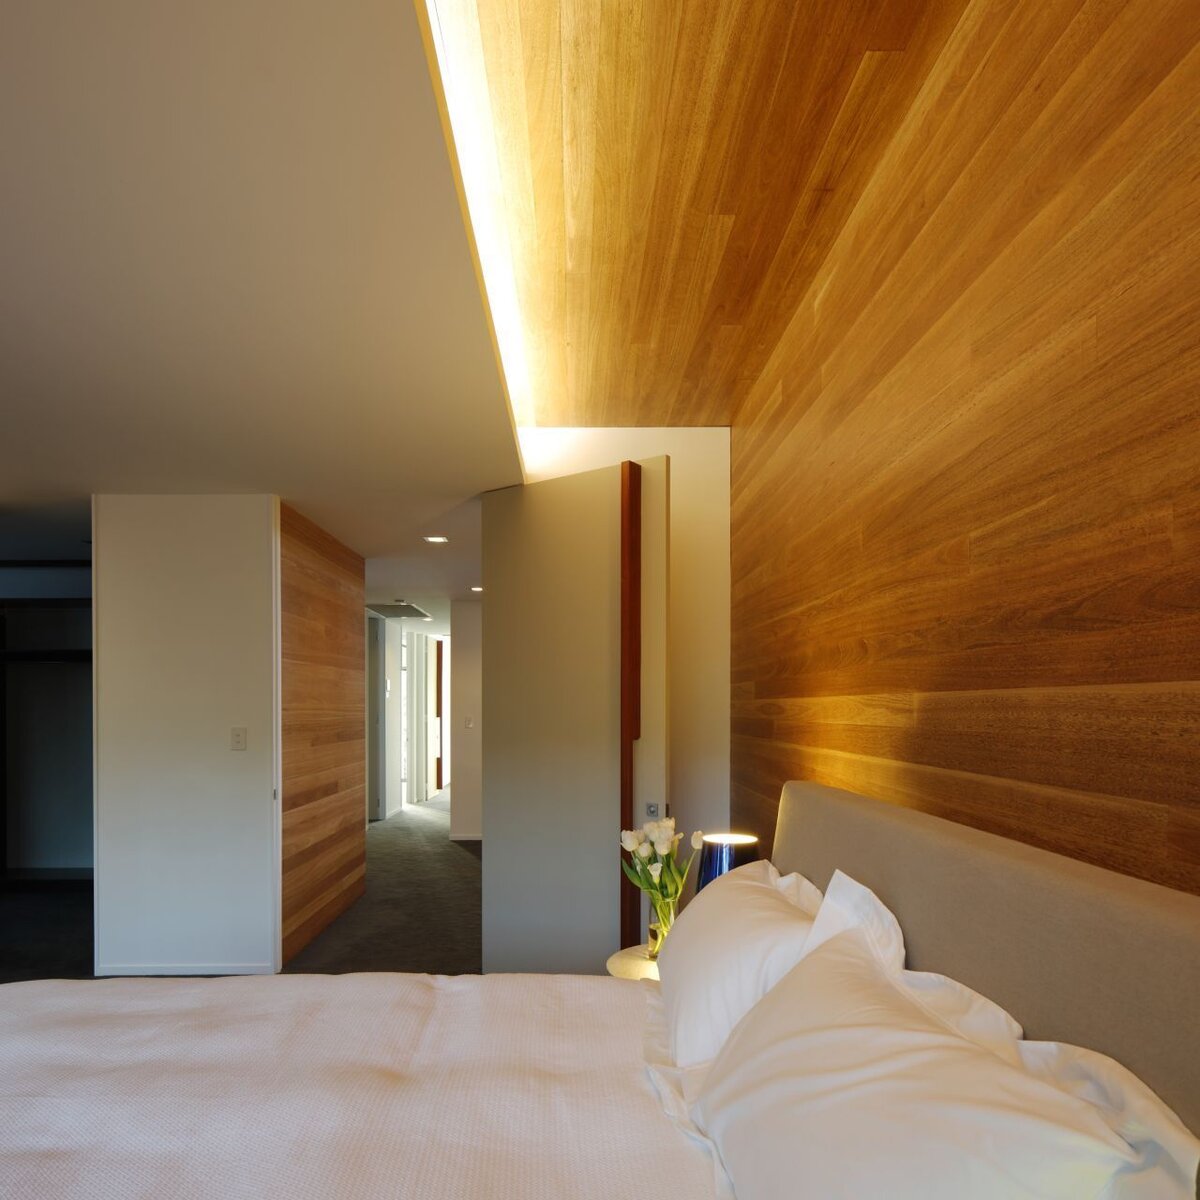 Проектирование света теплый свет. Деревянный потолок в спальне. Деревянный потолок с подсветкой. Освещение в спальне. Освещение на деревянном потолке.